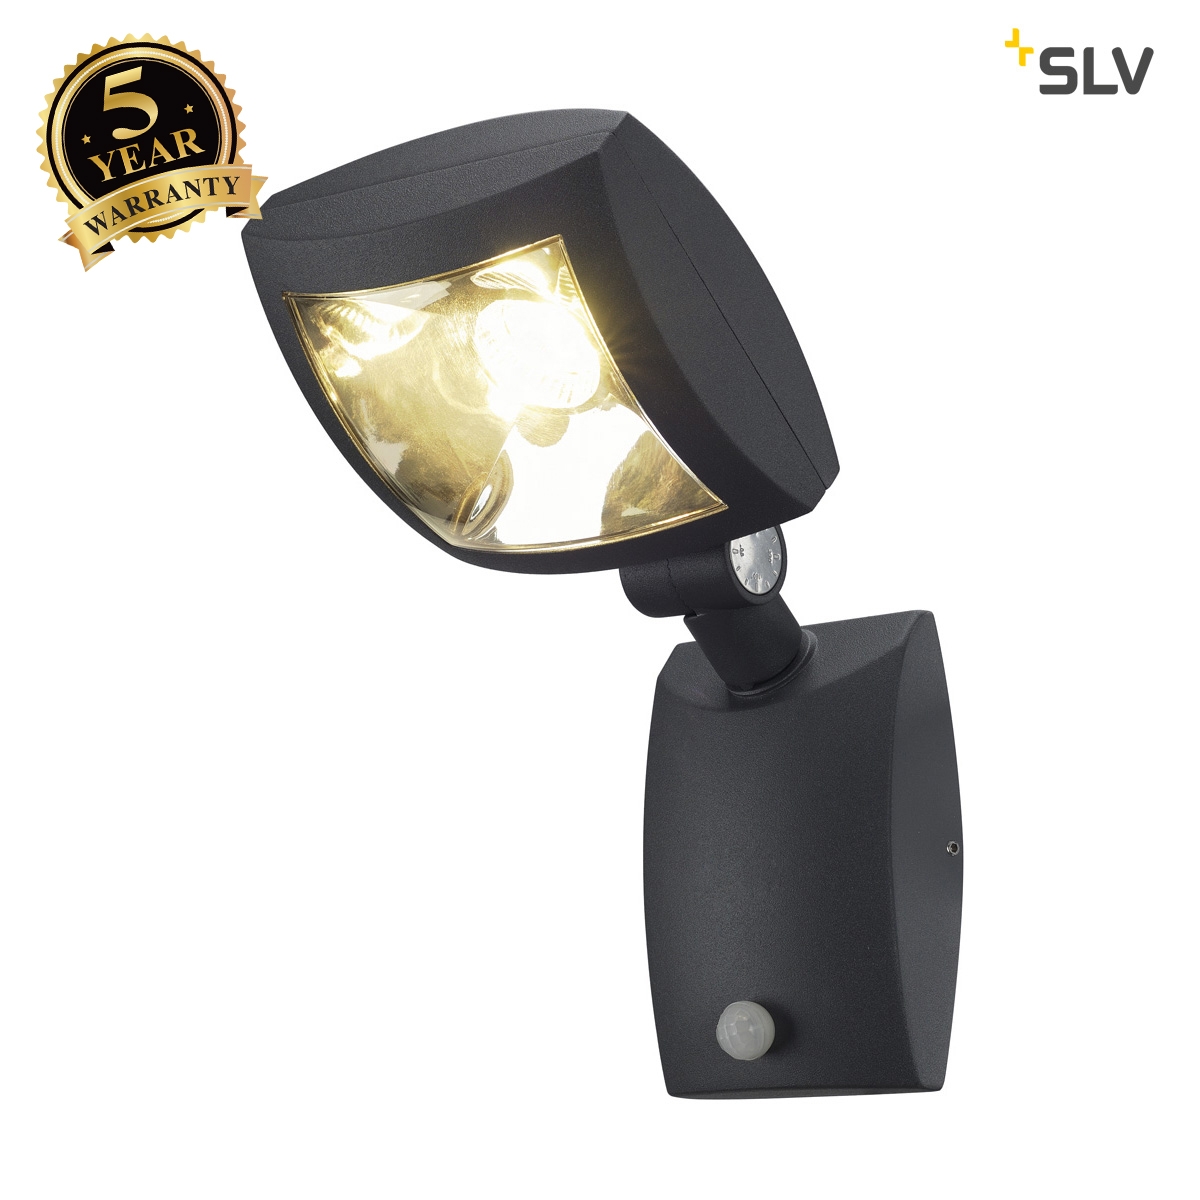 SLV MERVALED S wall light, anthracite, 12W LED, warm white, with motion sensor 232405